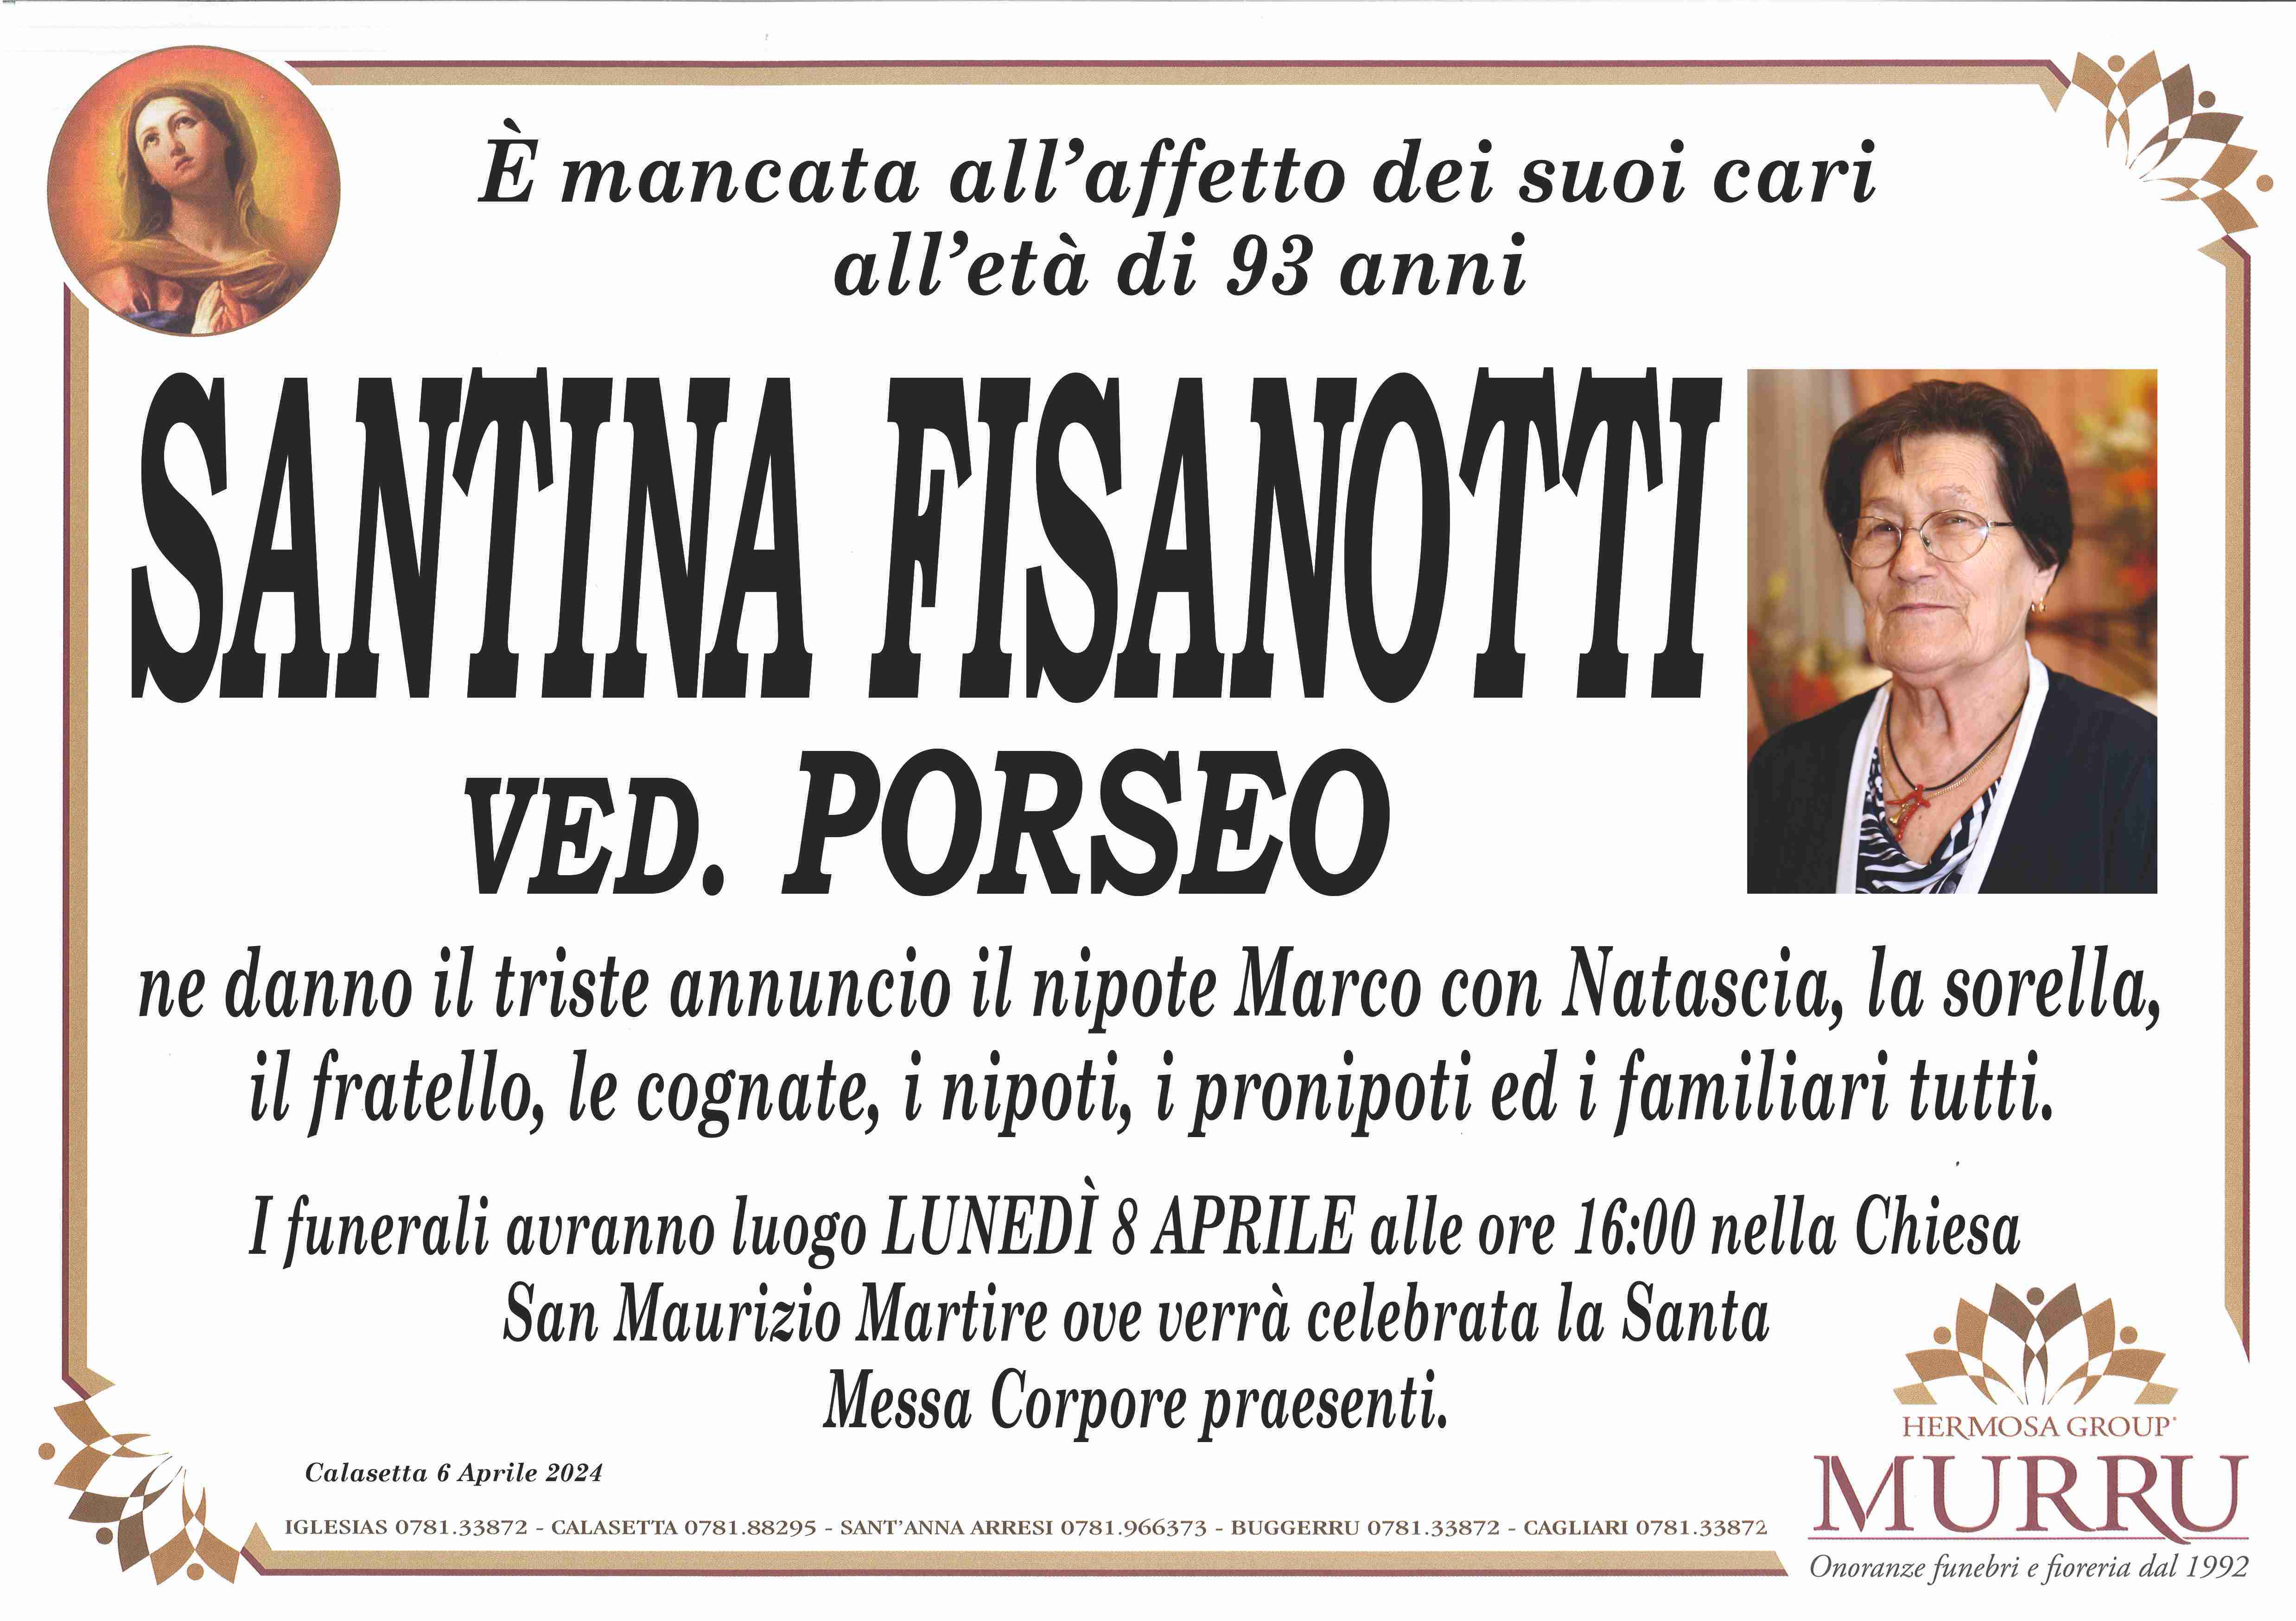 Santina Fisanotti